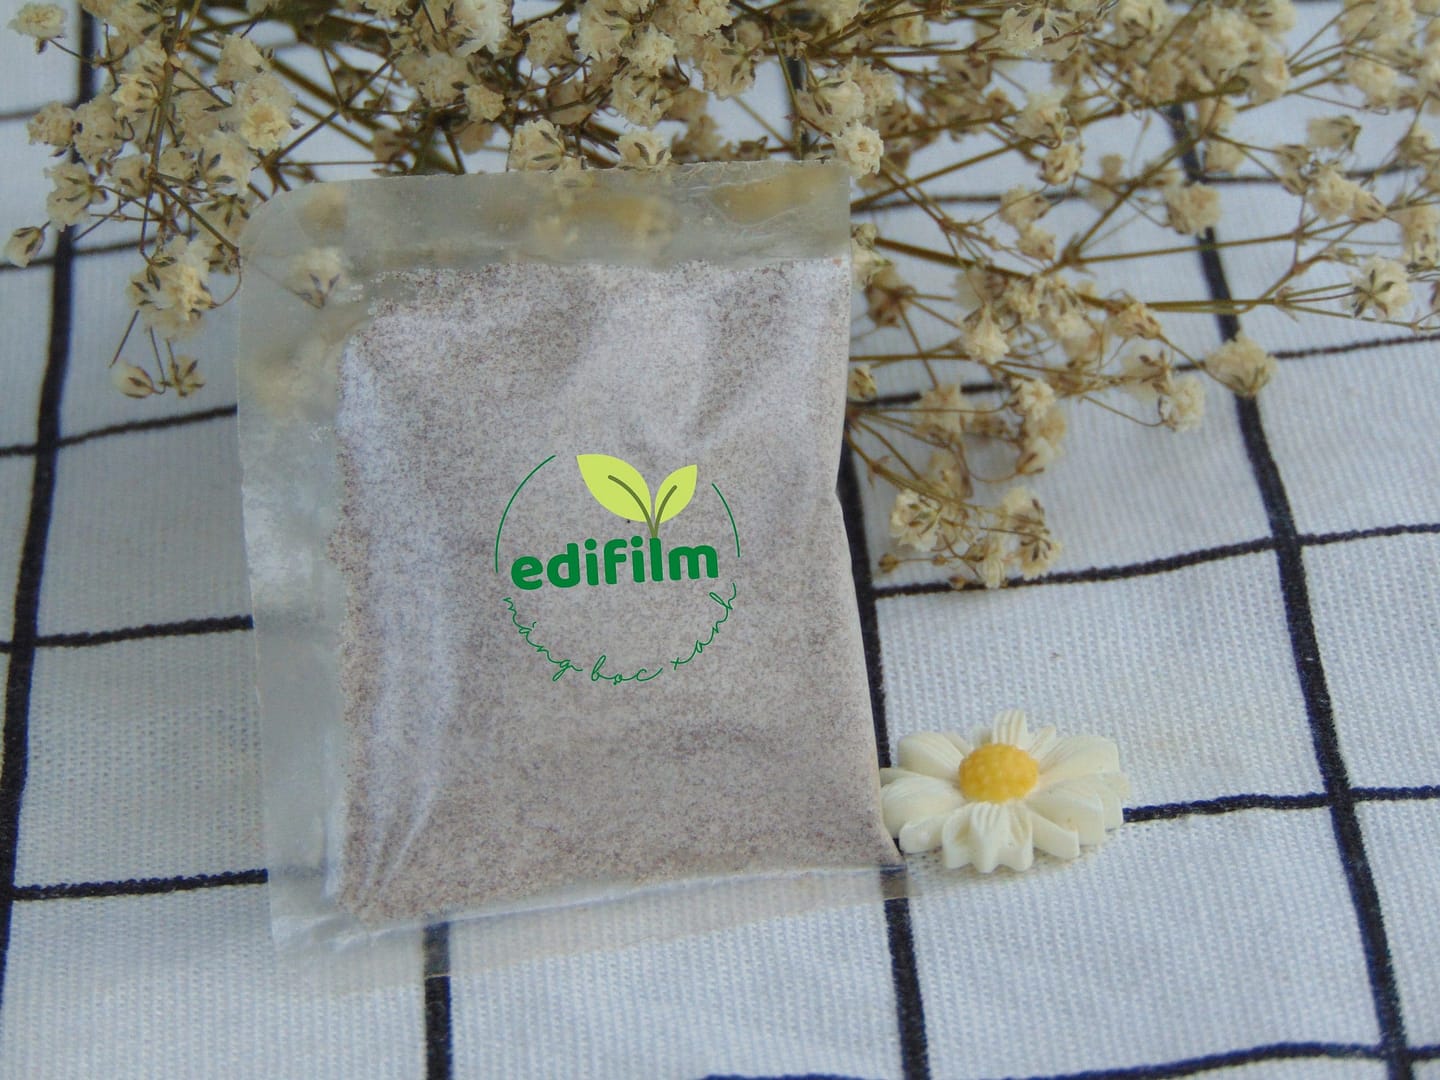 Mở khóa tiềm năng của bao bì nhựa ăn được tại Việt Nam cùng “Edifilm”